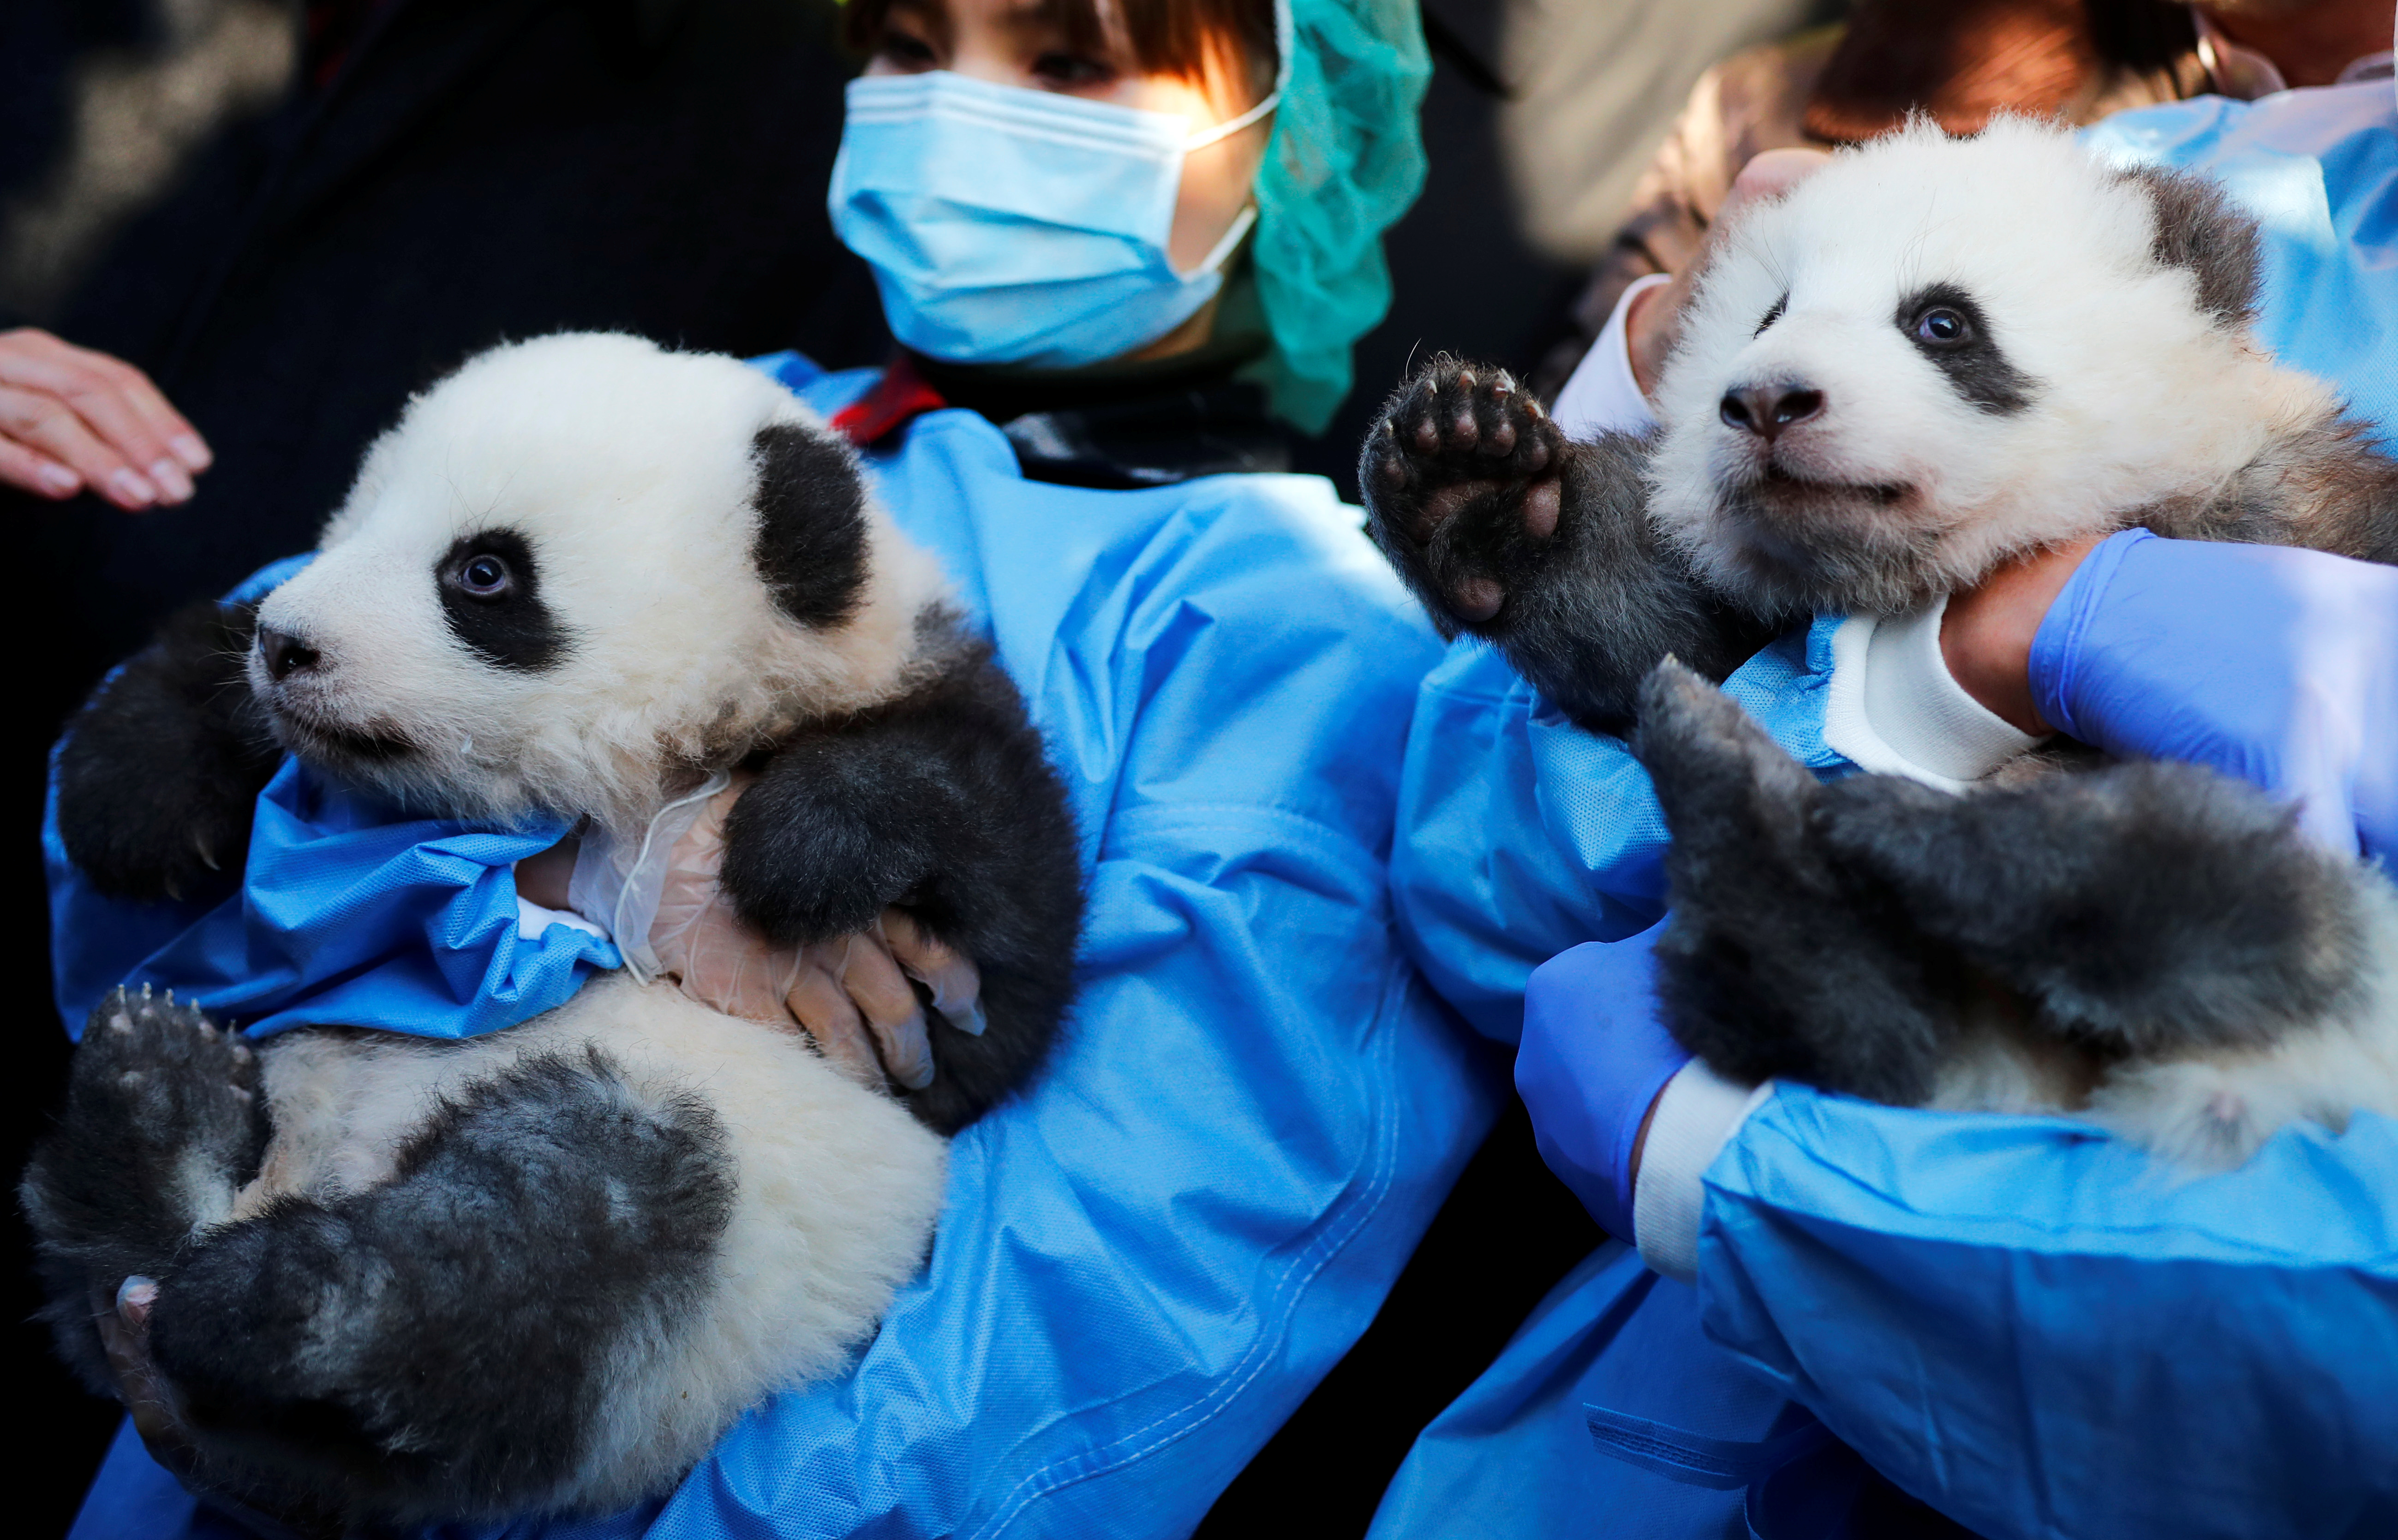 El Zoo de Berlín revela el sexo y nombres de sus dos osos pandas nacidos en cautividad (Fotos)